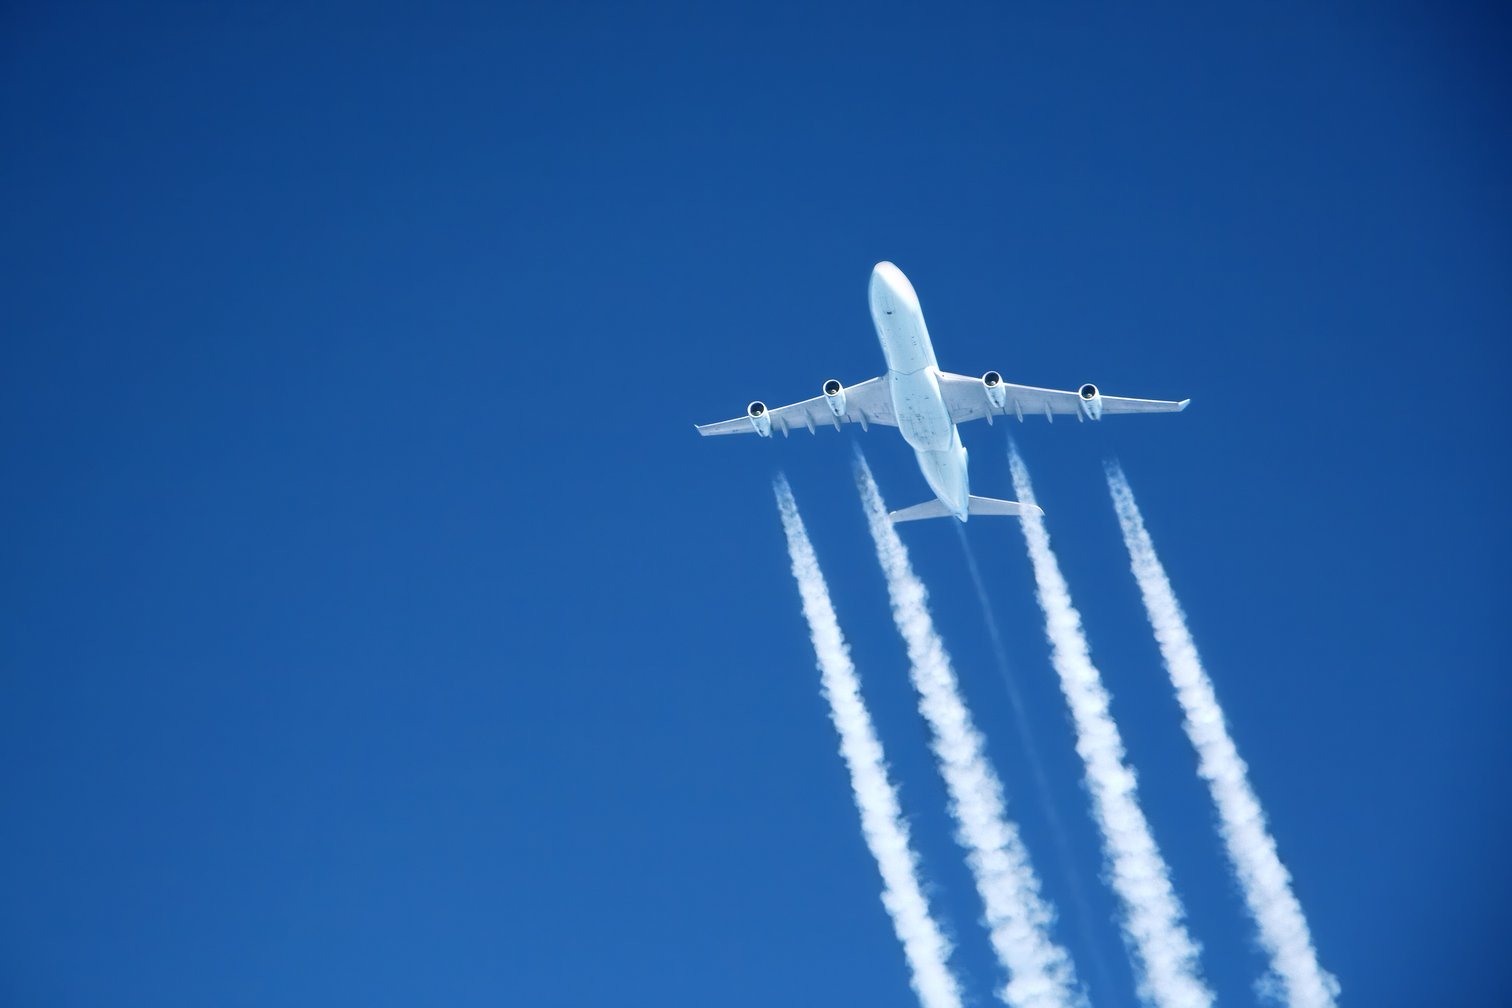 A jet flies in a blue sky | Getty